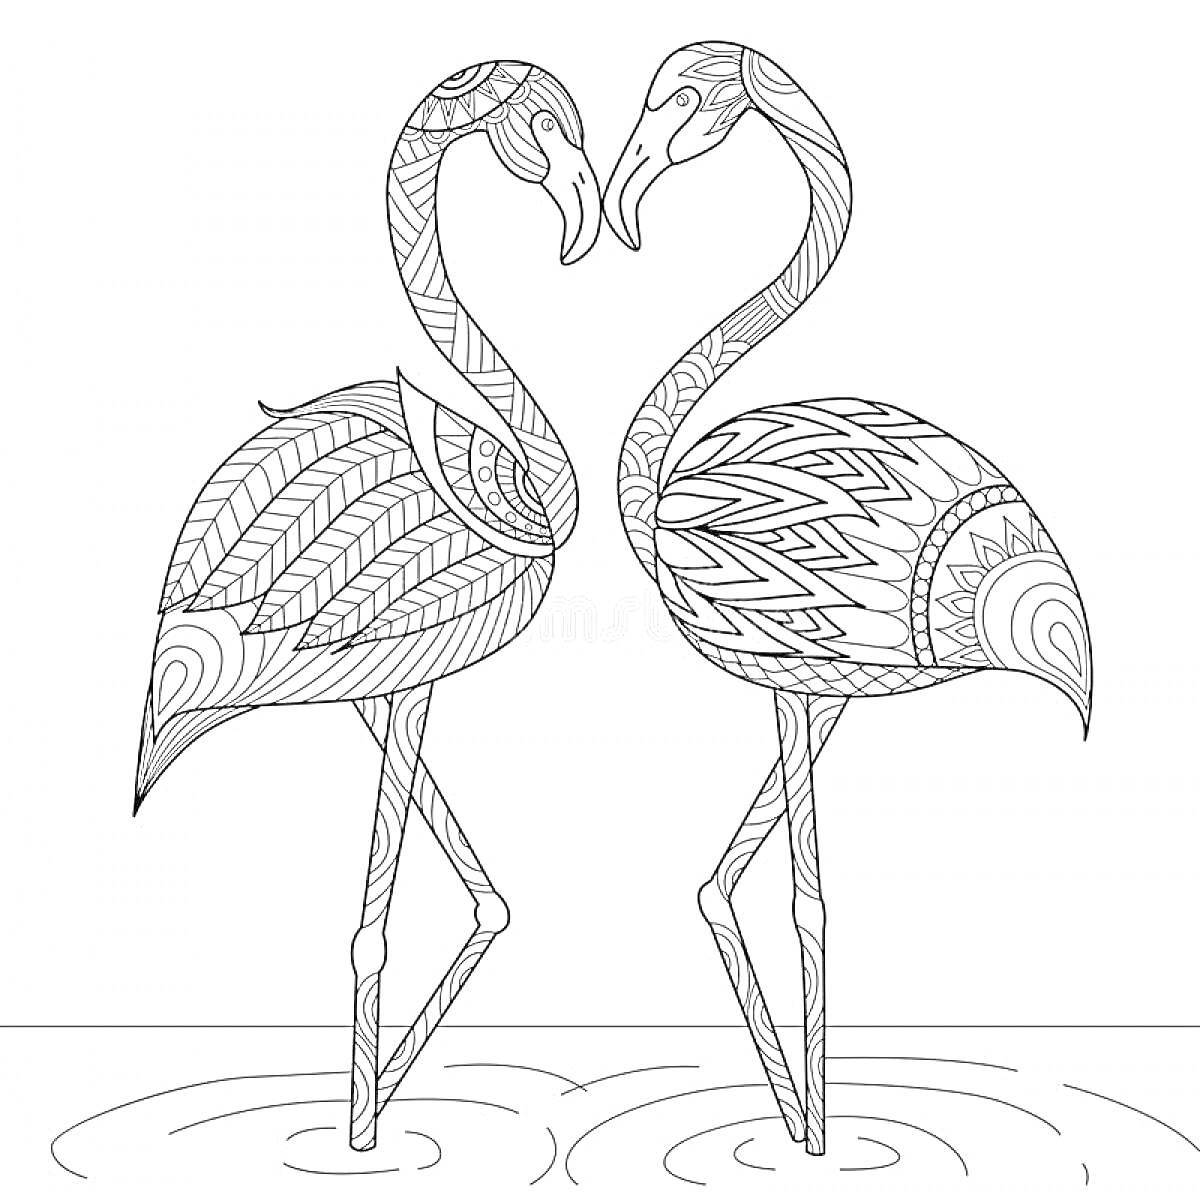 Раскраска два фламинго с узорами, стоящие на одной ноге в воде